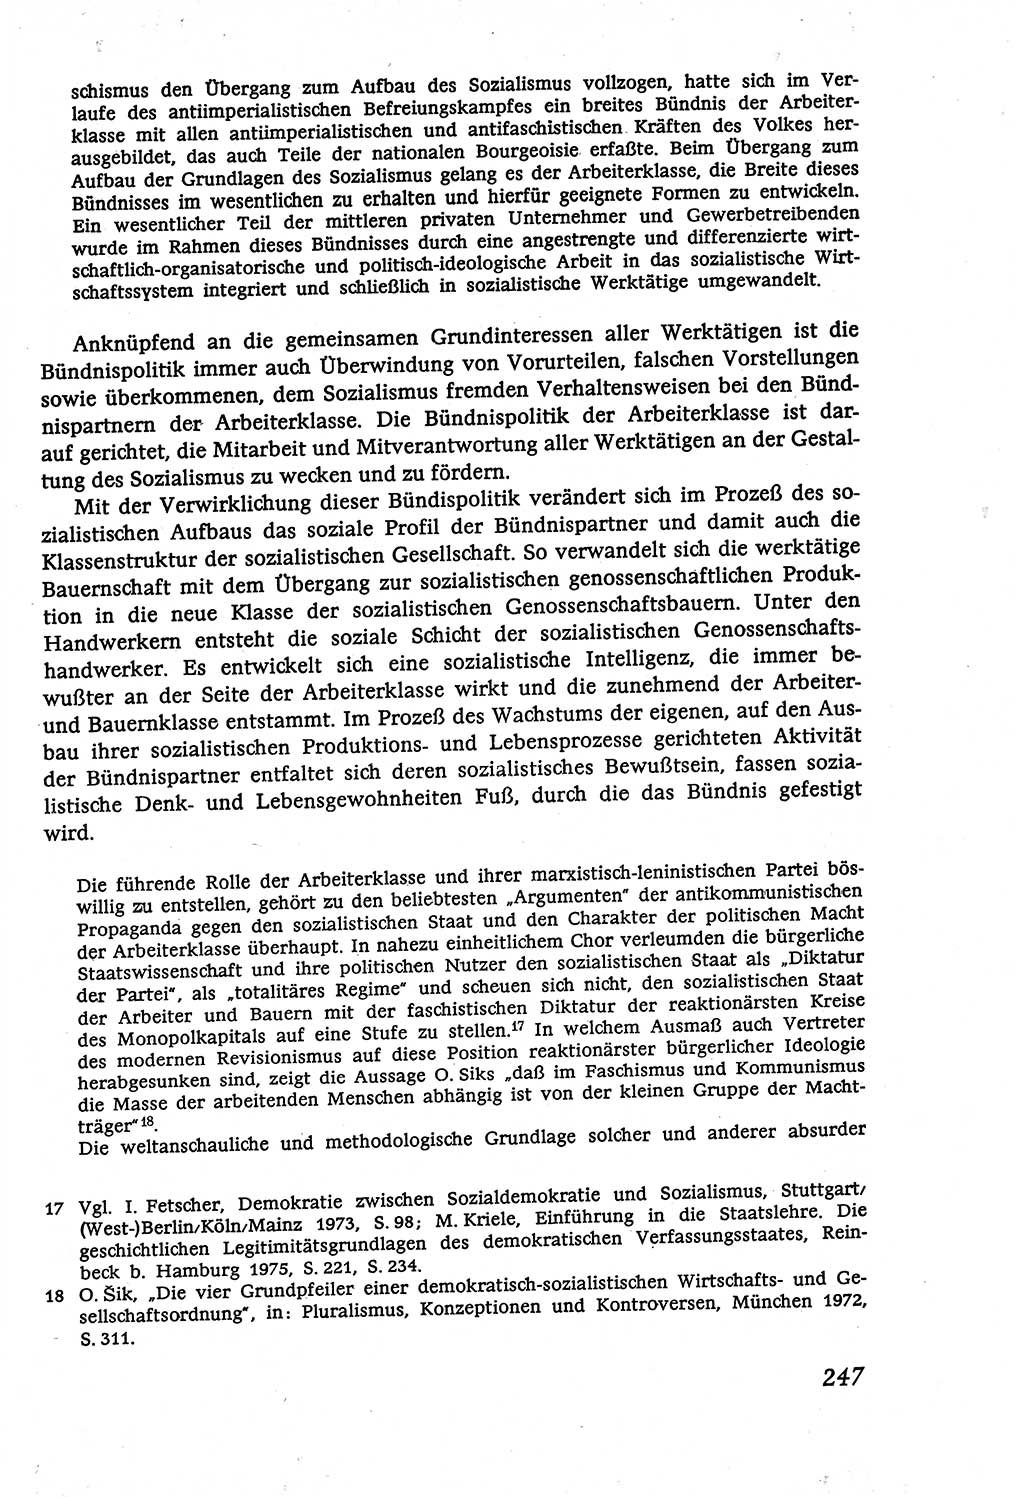 Marxistisch-leninistische (ML) Staats- und Rechtstheorie [Deutsche Demokratische Republik (DDR)], Lehrbuch 1980, Seite 247 (ML St.-R.-Th. DDR Lb. 1980, S. 247)